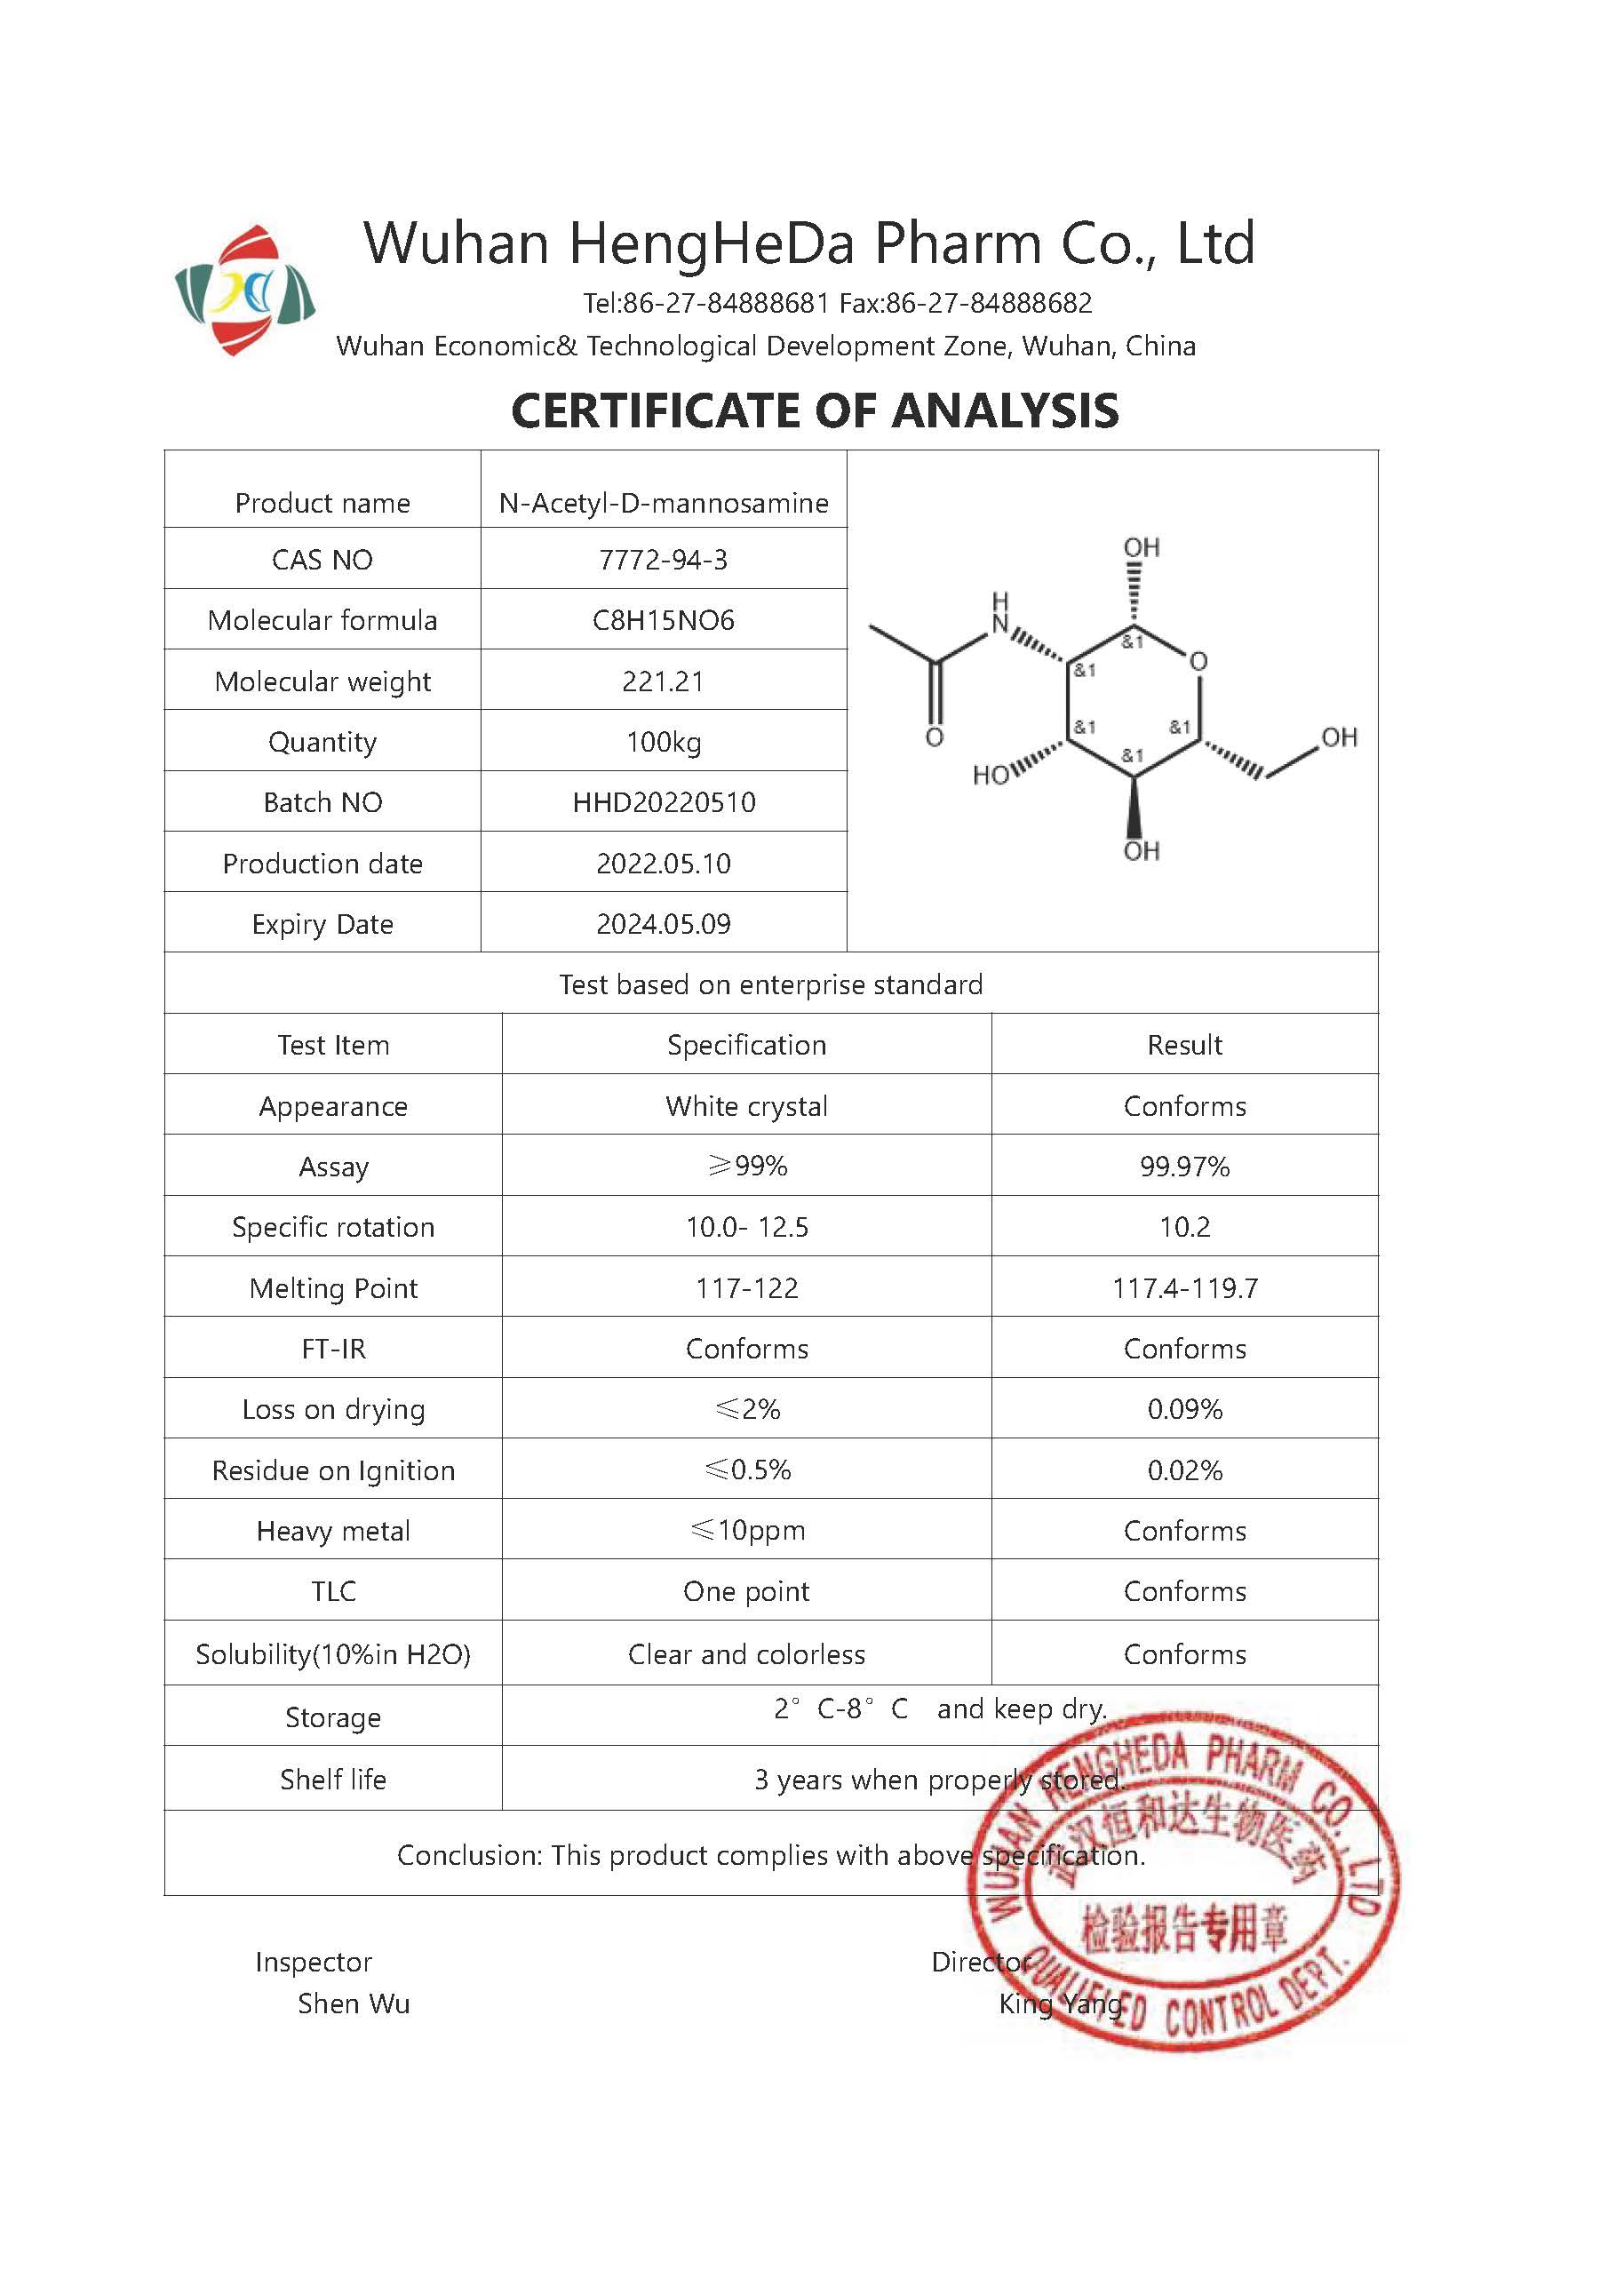 Acquista N-acetil-D-mannosamina CAS 7772-94-3,N-acetil-D-mannosamina CAS 7772-94-3 prezzi,N-acetil-D-mannosamina CAS 7772-94-3 marche,N-acetil-D-mannosamina CAS 7772-94-3 Produttori,N-acetil-D-mannosamina CAS 7772-94-3 Citazioni,N-acetil-D-mannosamina CAS 7772-94-3  l'azienda,